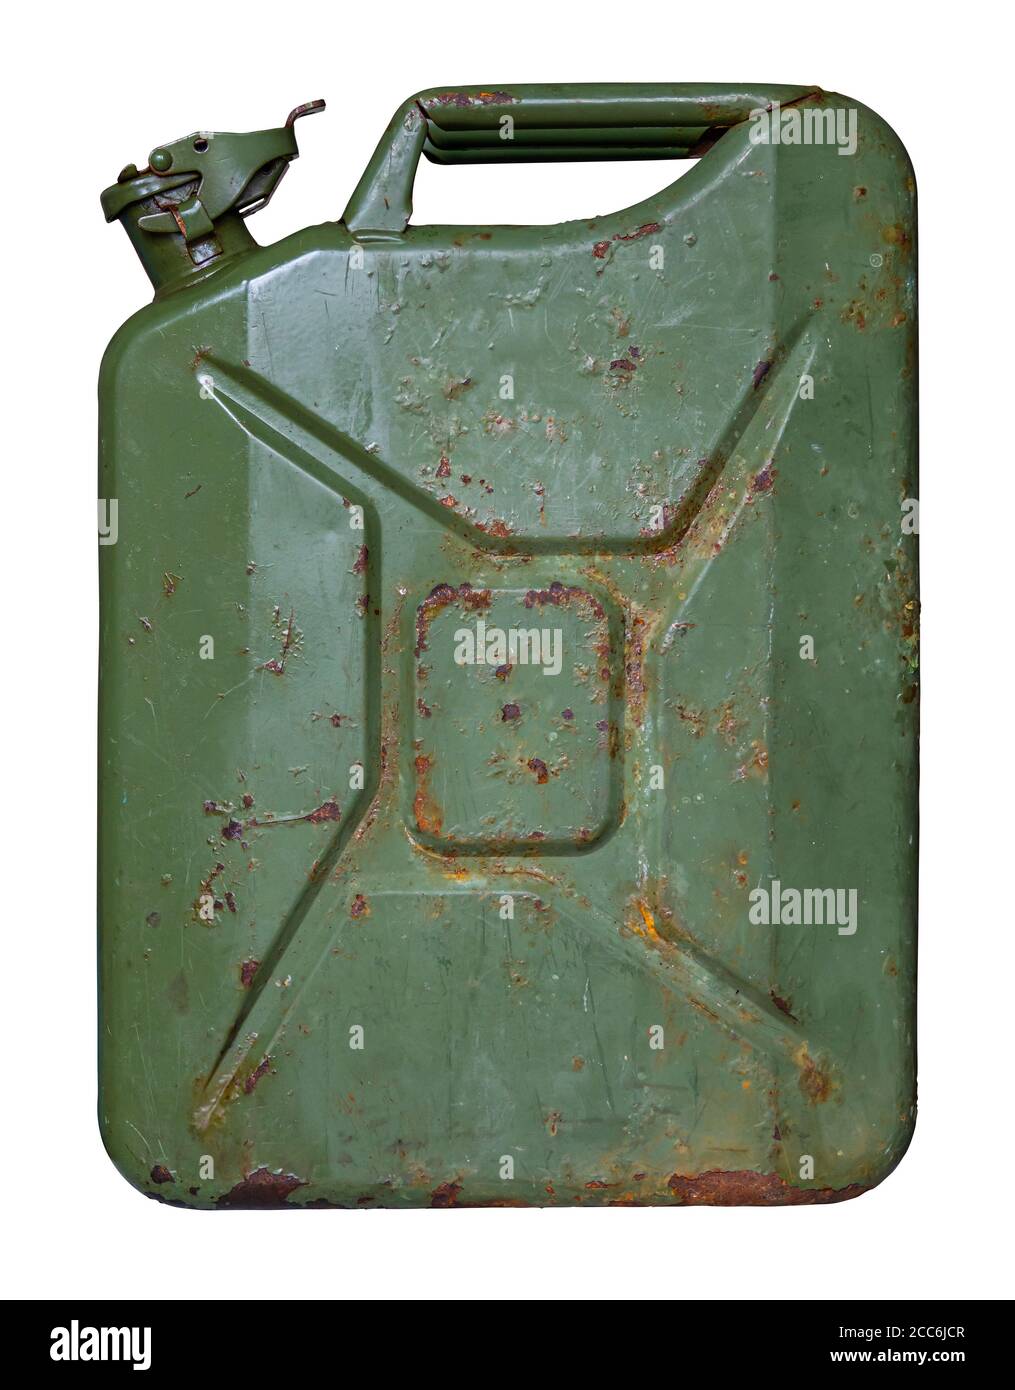 Alte rostige Benzinkanister mit Deckel isoliert auf weiss Stockfotografie -  Alamy